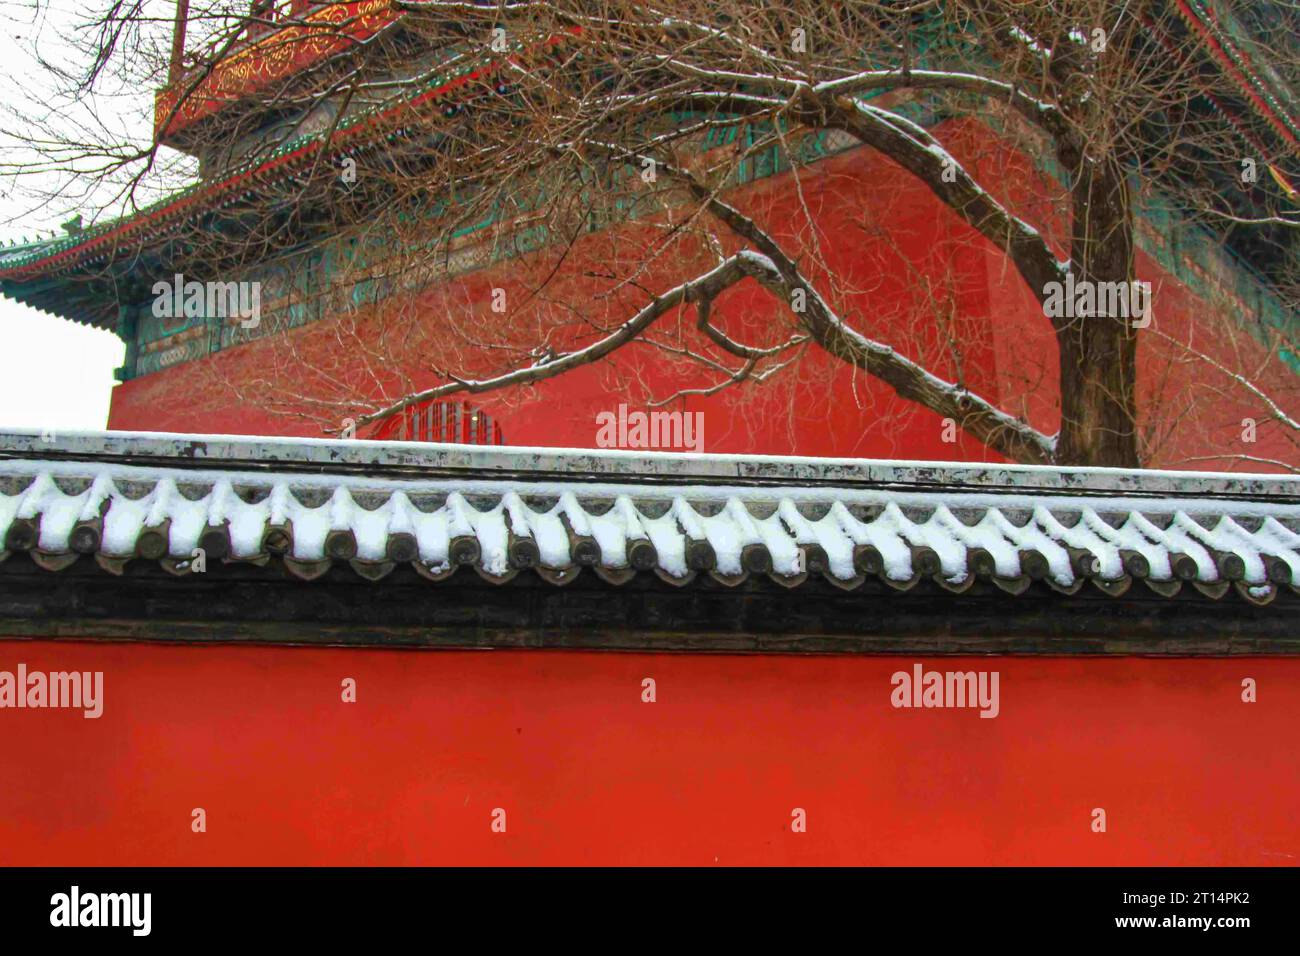 Esplora l'incantevole spettacolo di case tradizionali dalle tonalità diverse, annidate in un paese delle meraviglie invernali sotto un incontaminato paesaggio innevato cinese Foto Stock